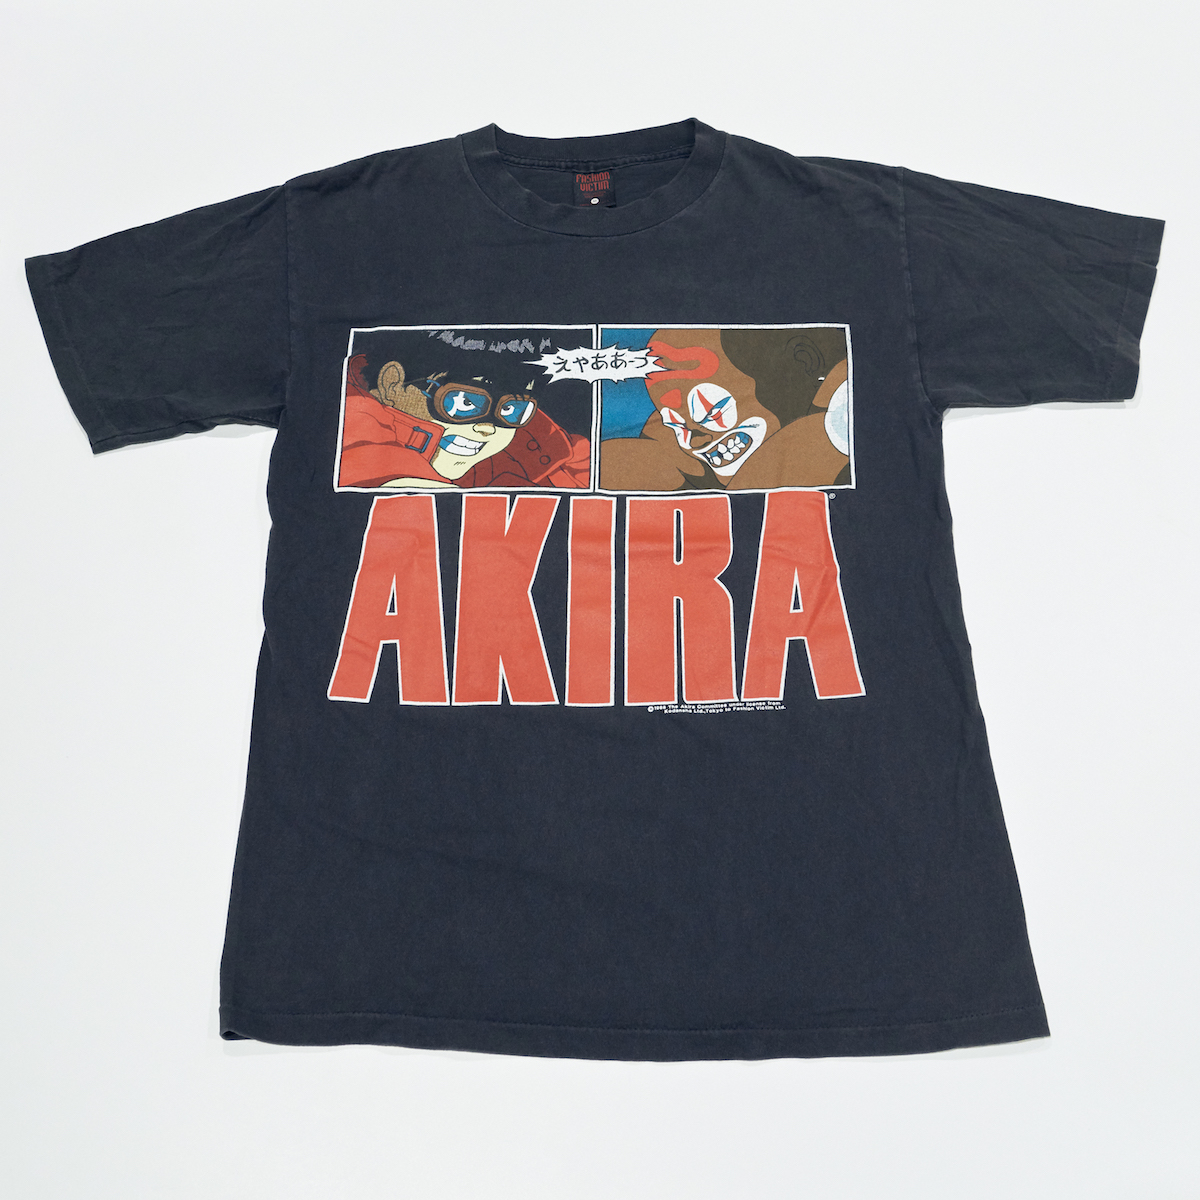 AKIRA Tシャツ 美品 AKIRA 金田 delta M - Tシャツ